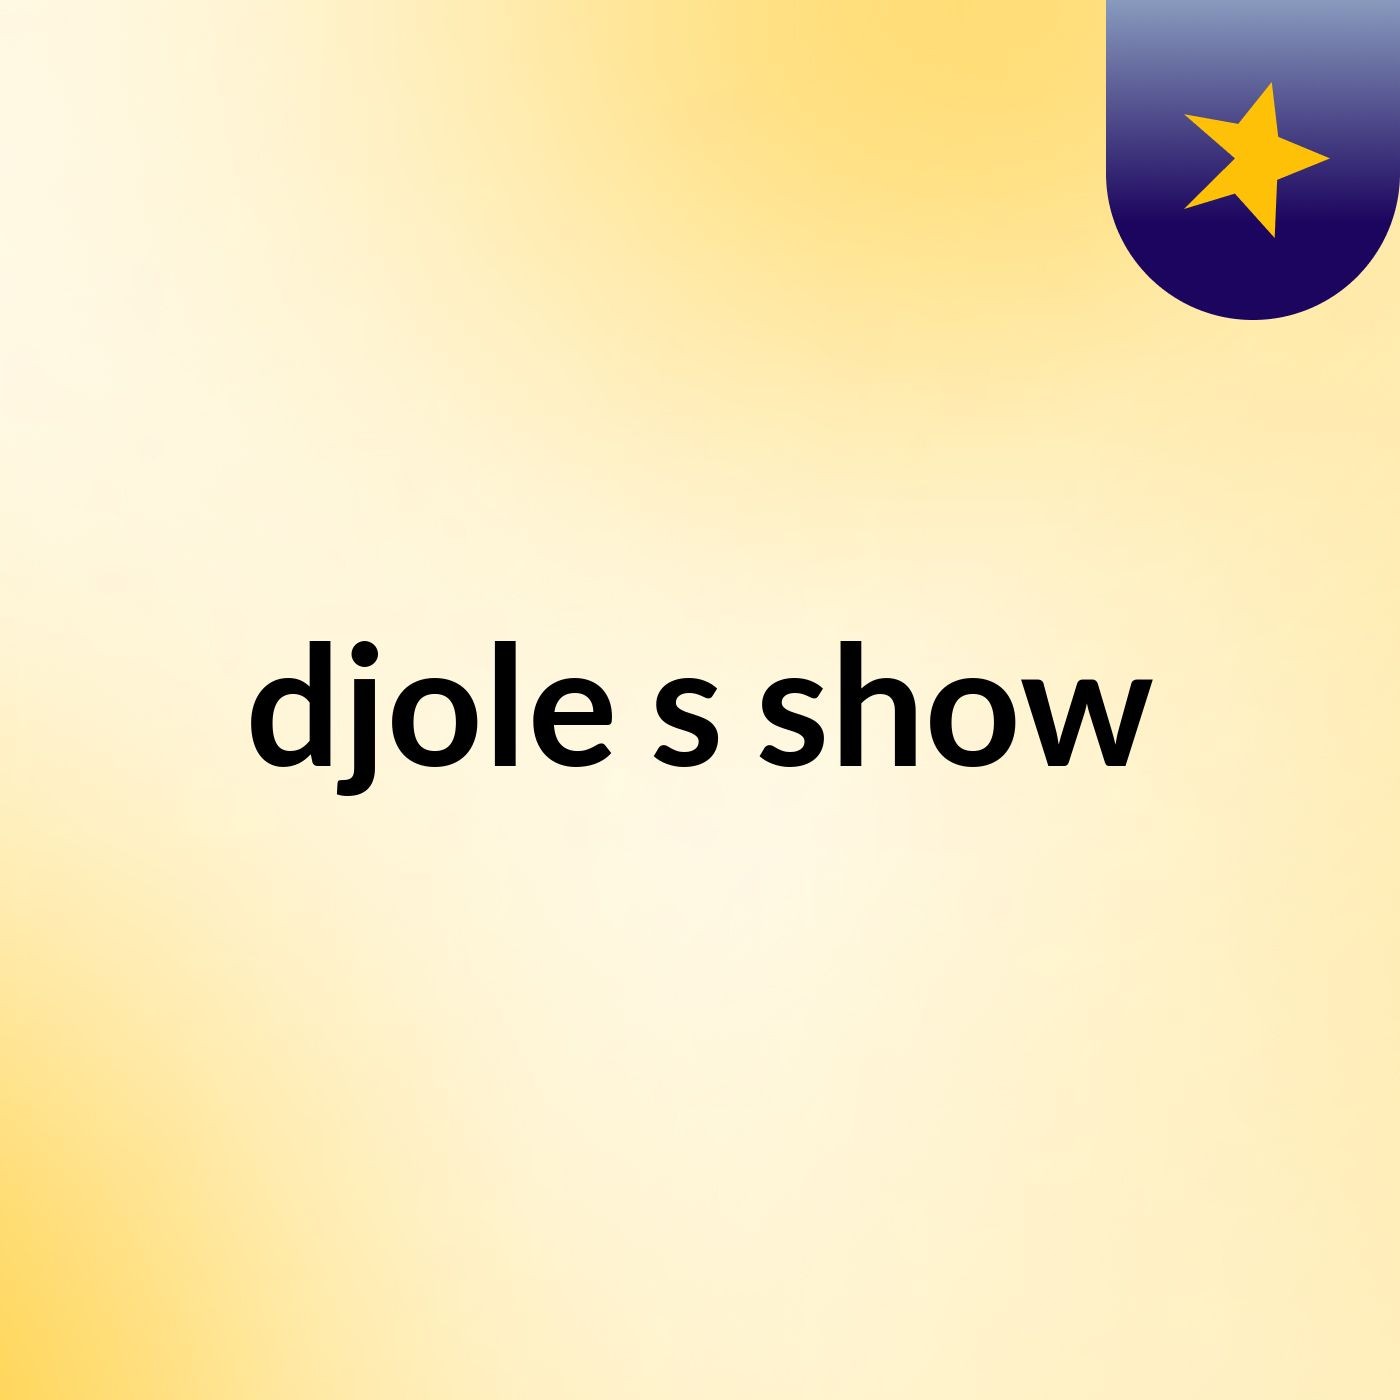 djole's show